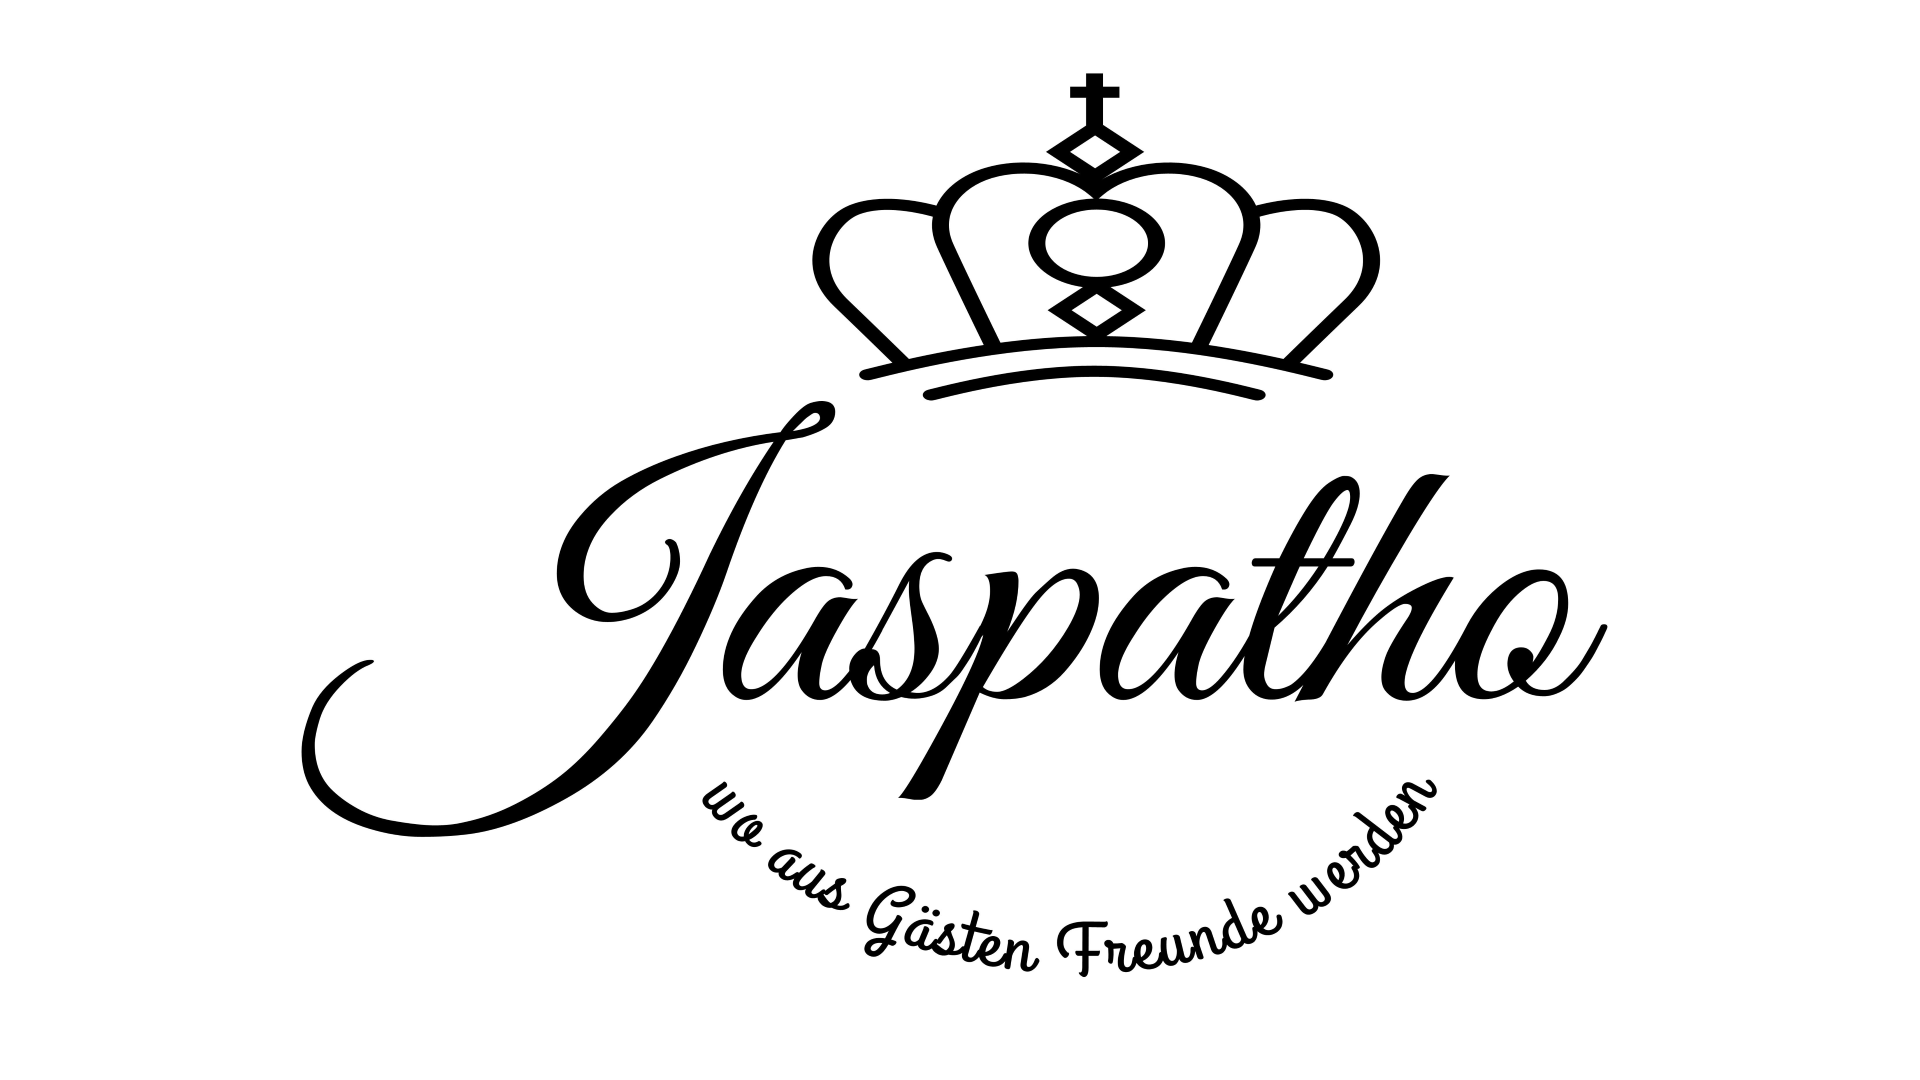 Jaspatho